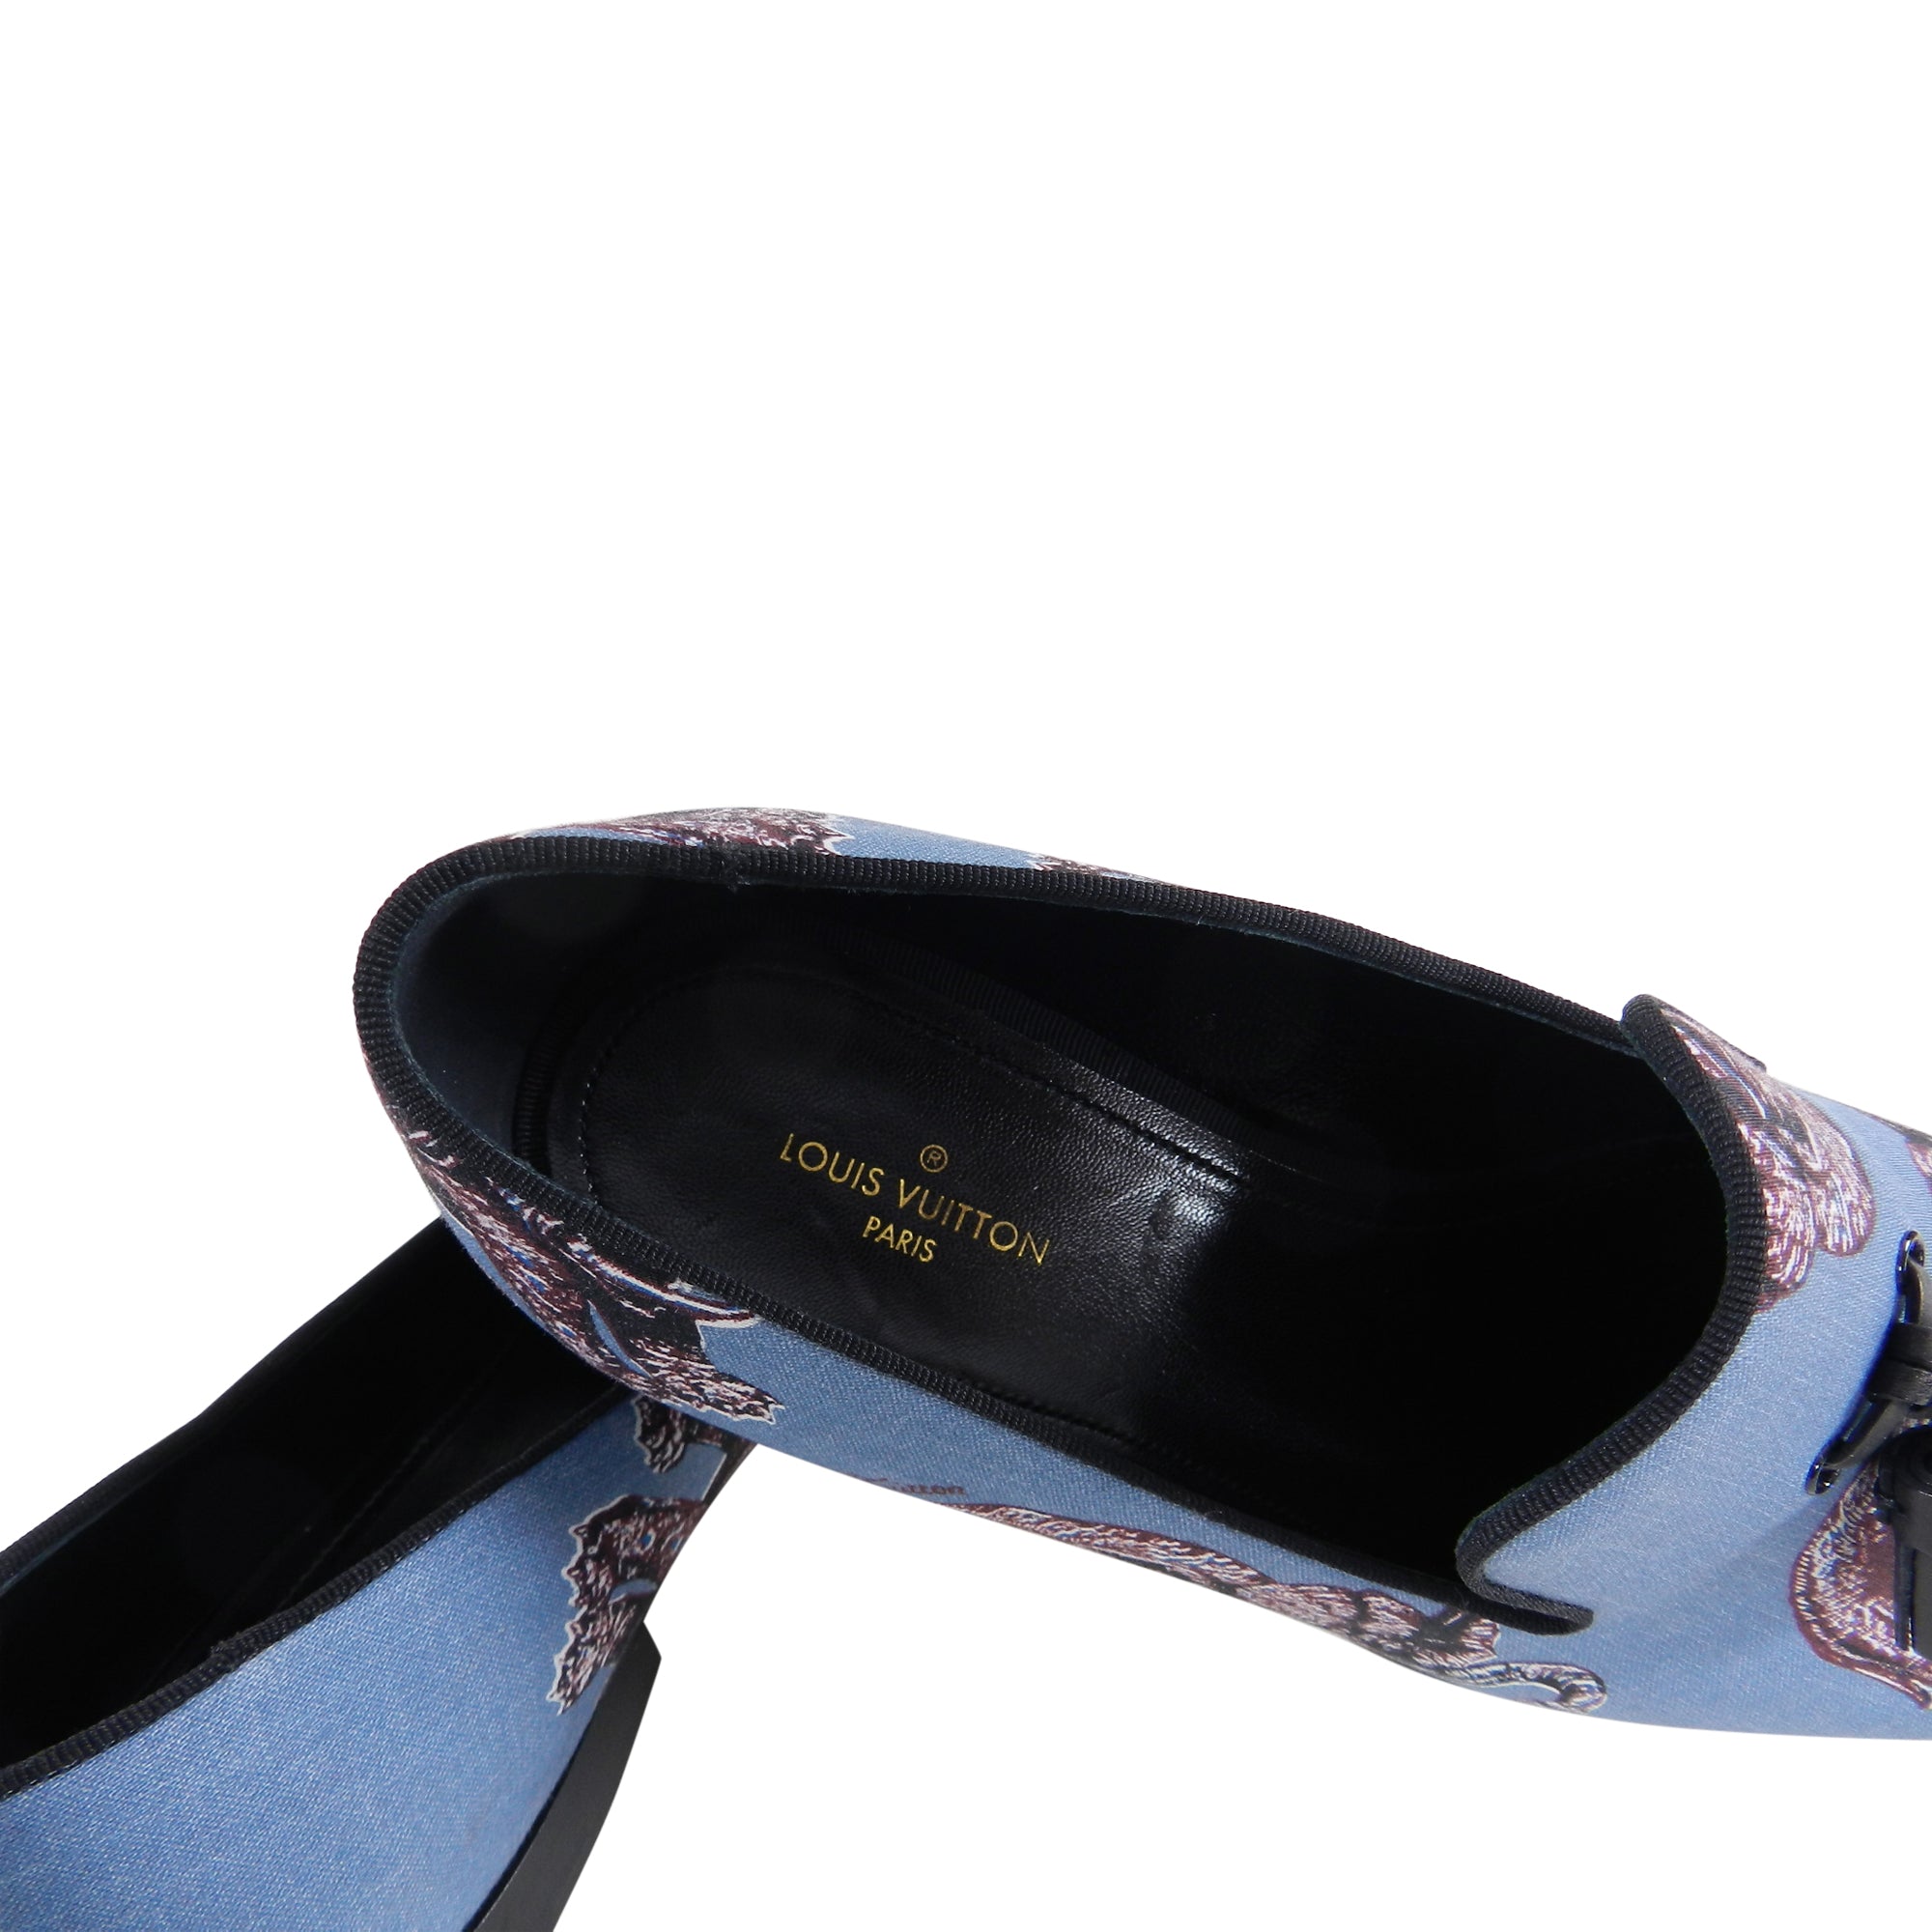 Louis Vuitton Shoes Slipper Loafer UK 7 US 8 EU 41 Auteuil Chapman